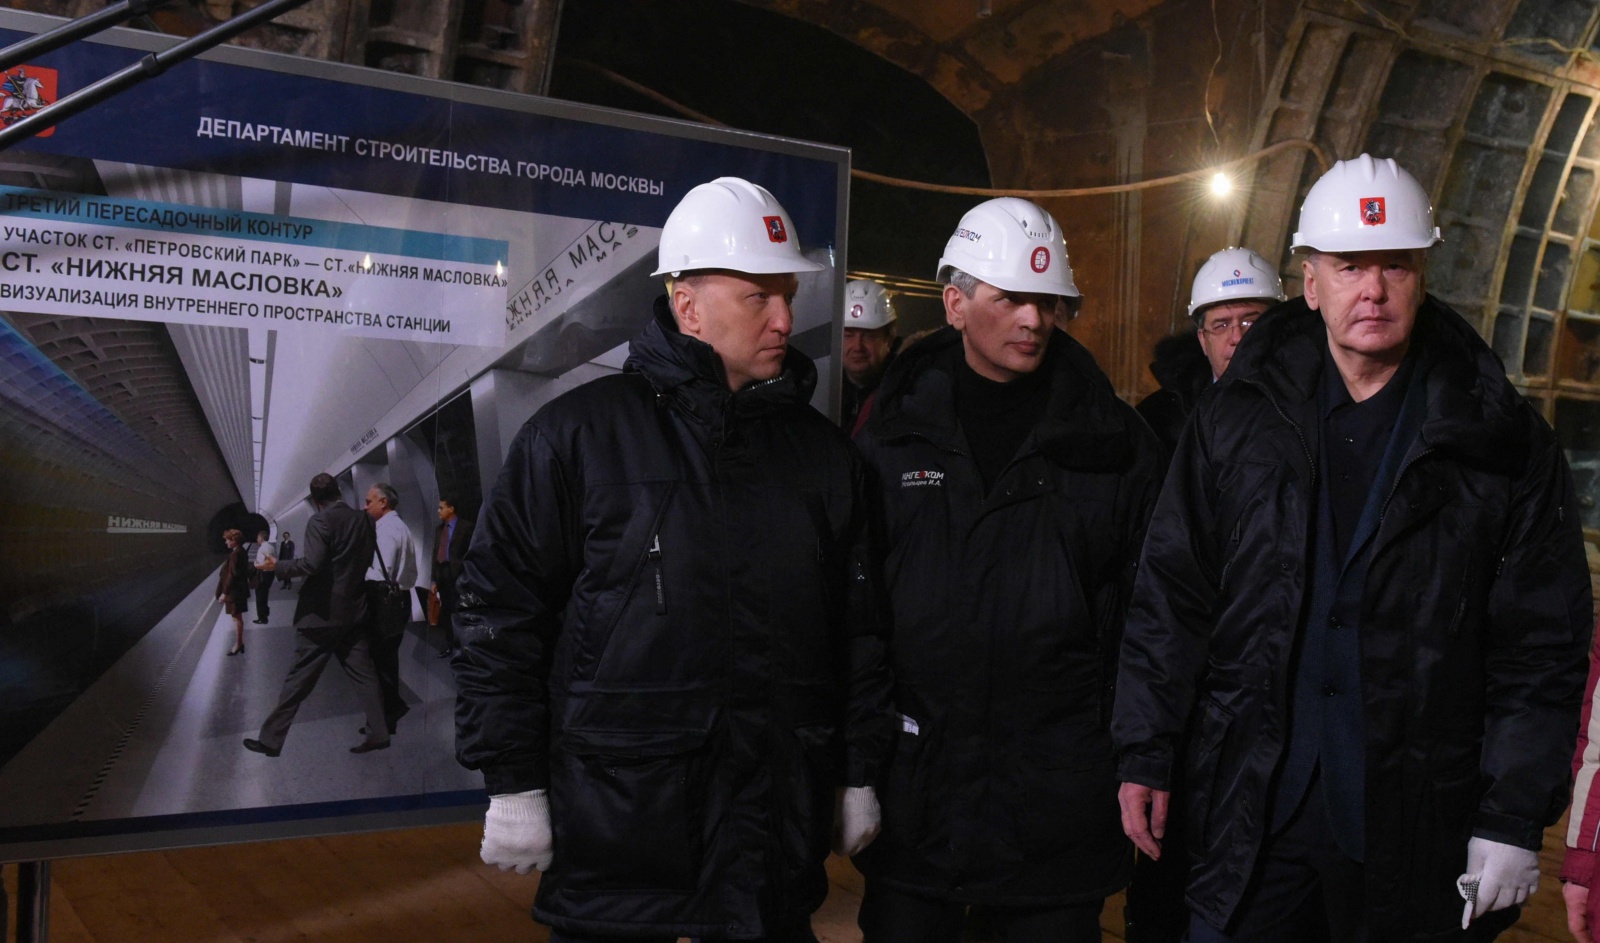 Собянин: Строительство станции метро "Нижняя Масловка" будет завершено в 2018 году